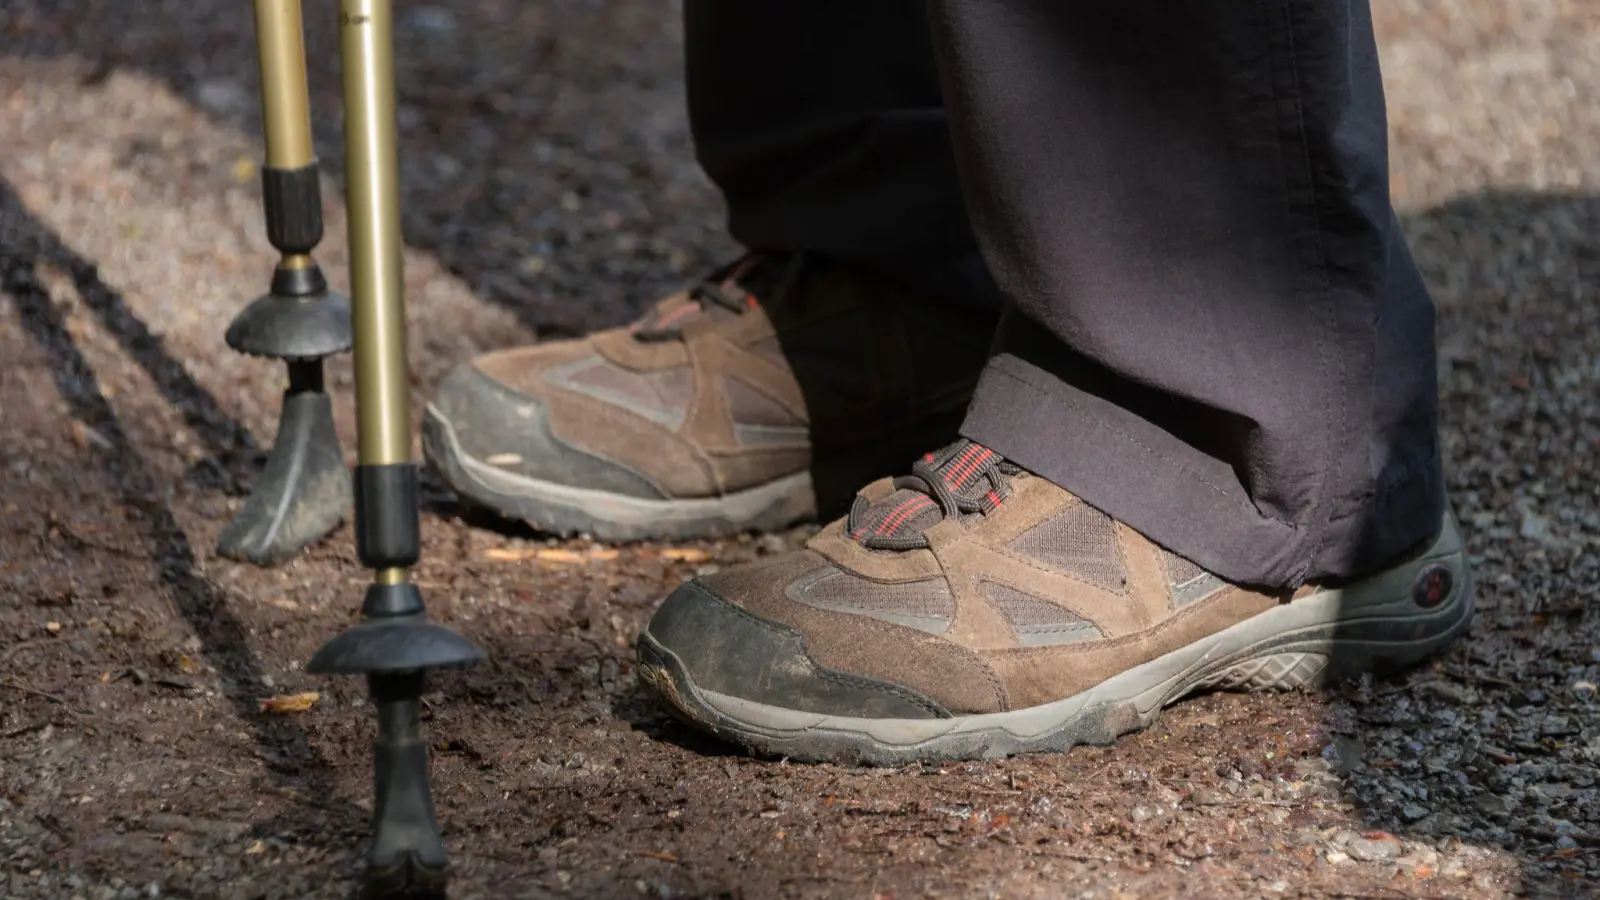 Die Lust, die Schuhe zu schnüren, wird nach Einschätzung von Experten auch nach der Corona-Pandemie anhalten. (Foto: picture alliance / Daniel Maurer/dpa)